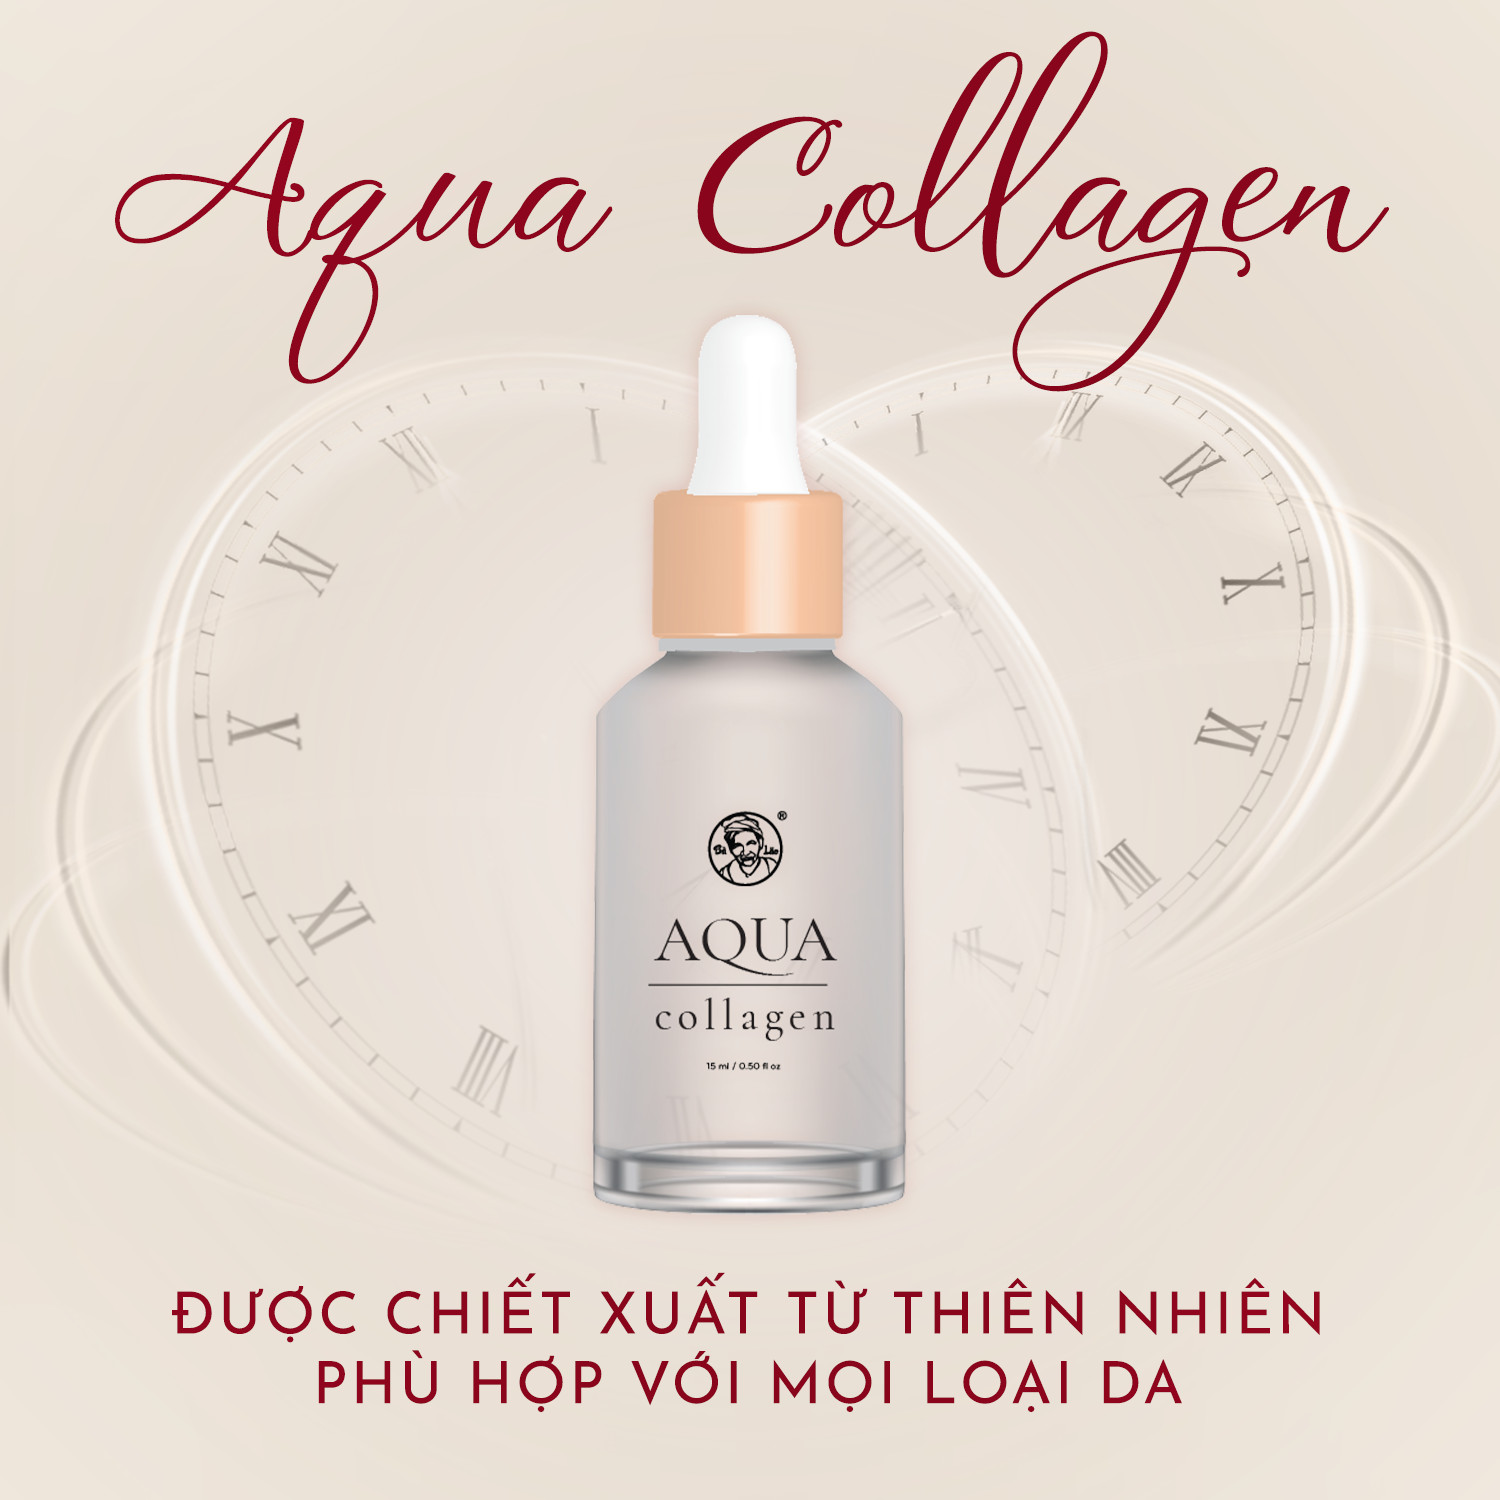 Aqua Collagen và Face Luxury giúp bạn có ngay vẻ đẹp thanh xuân bất chấp thời gian